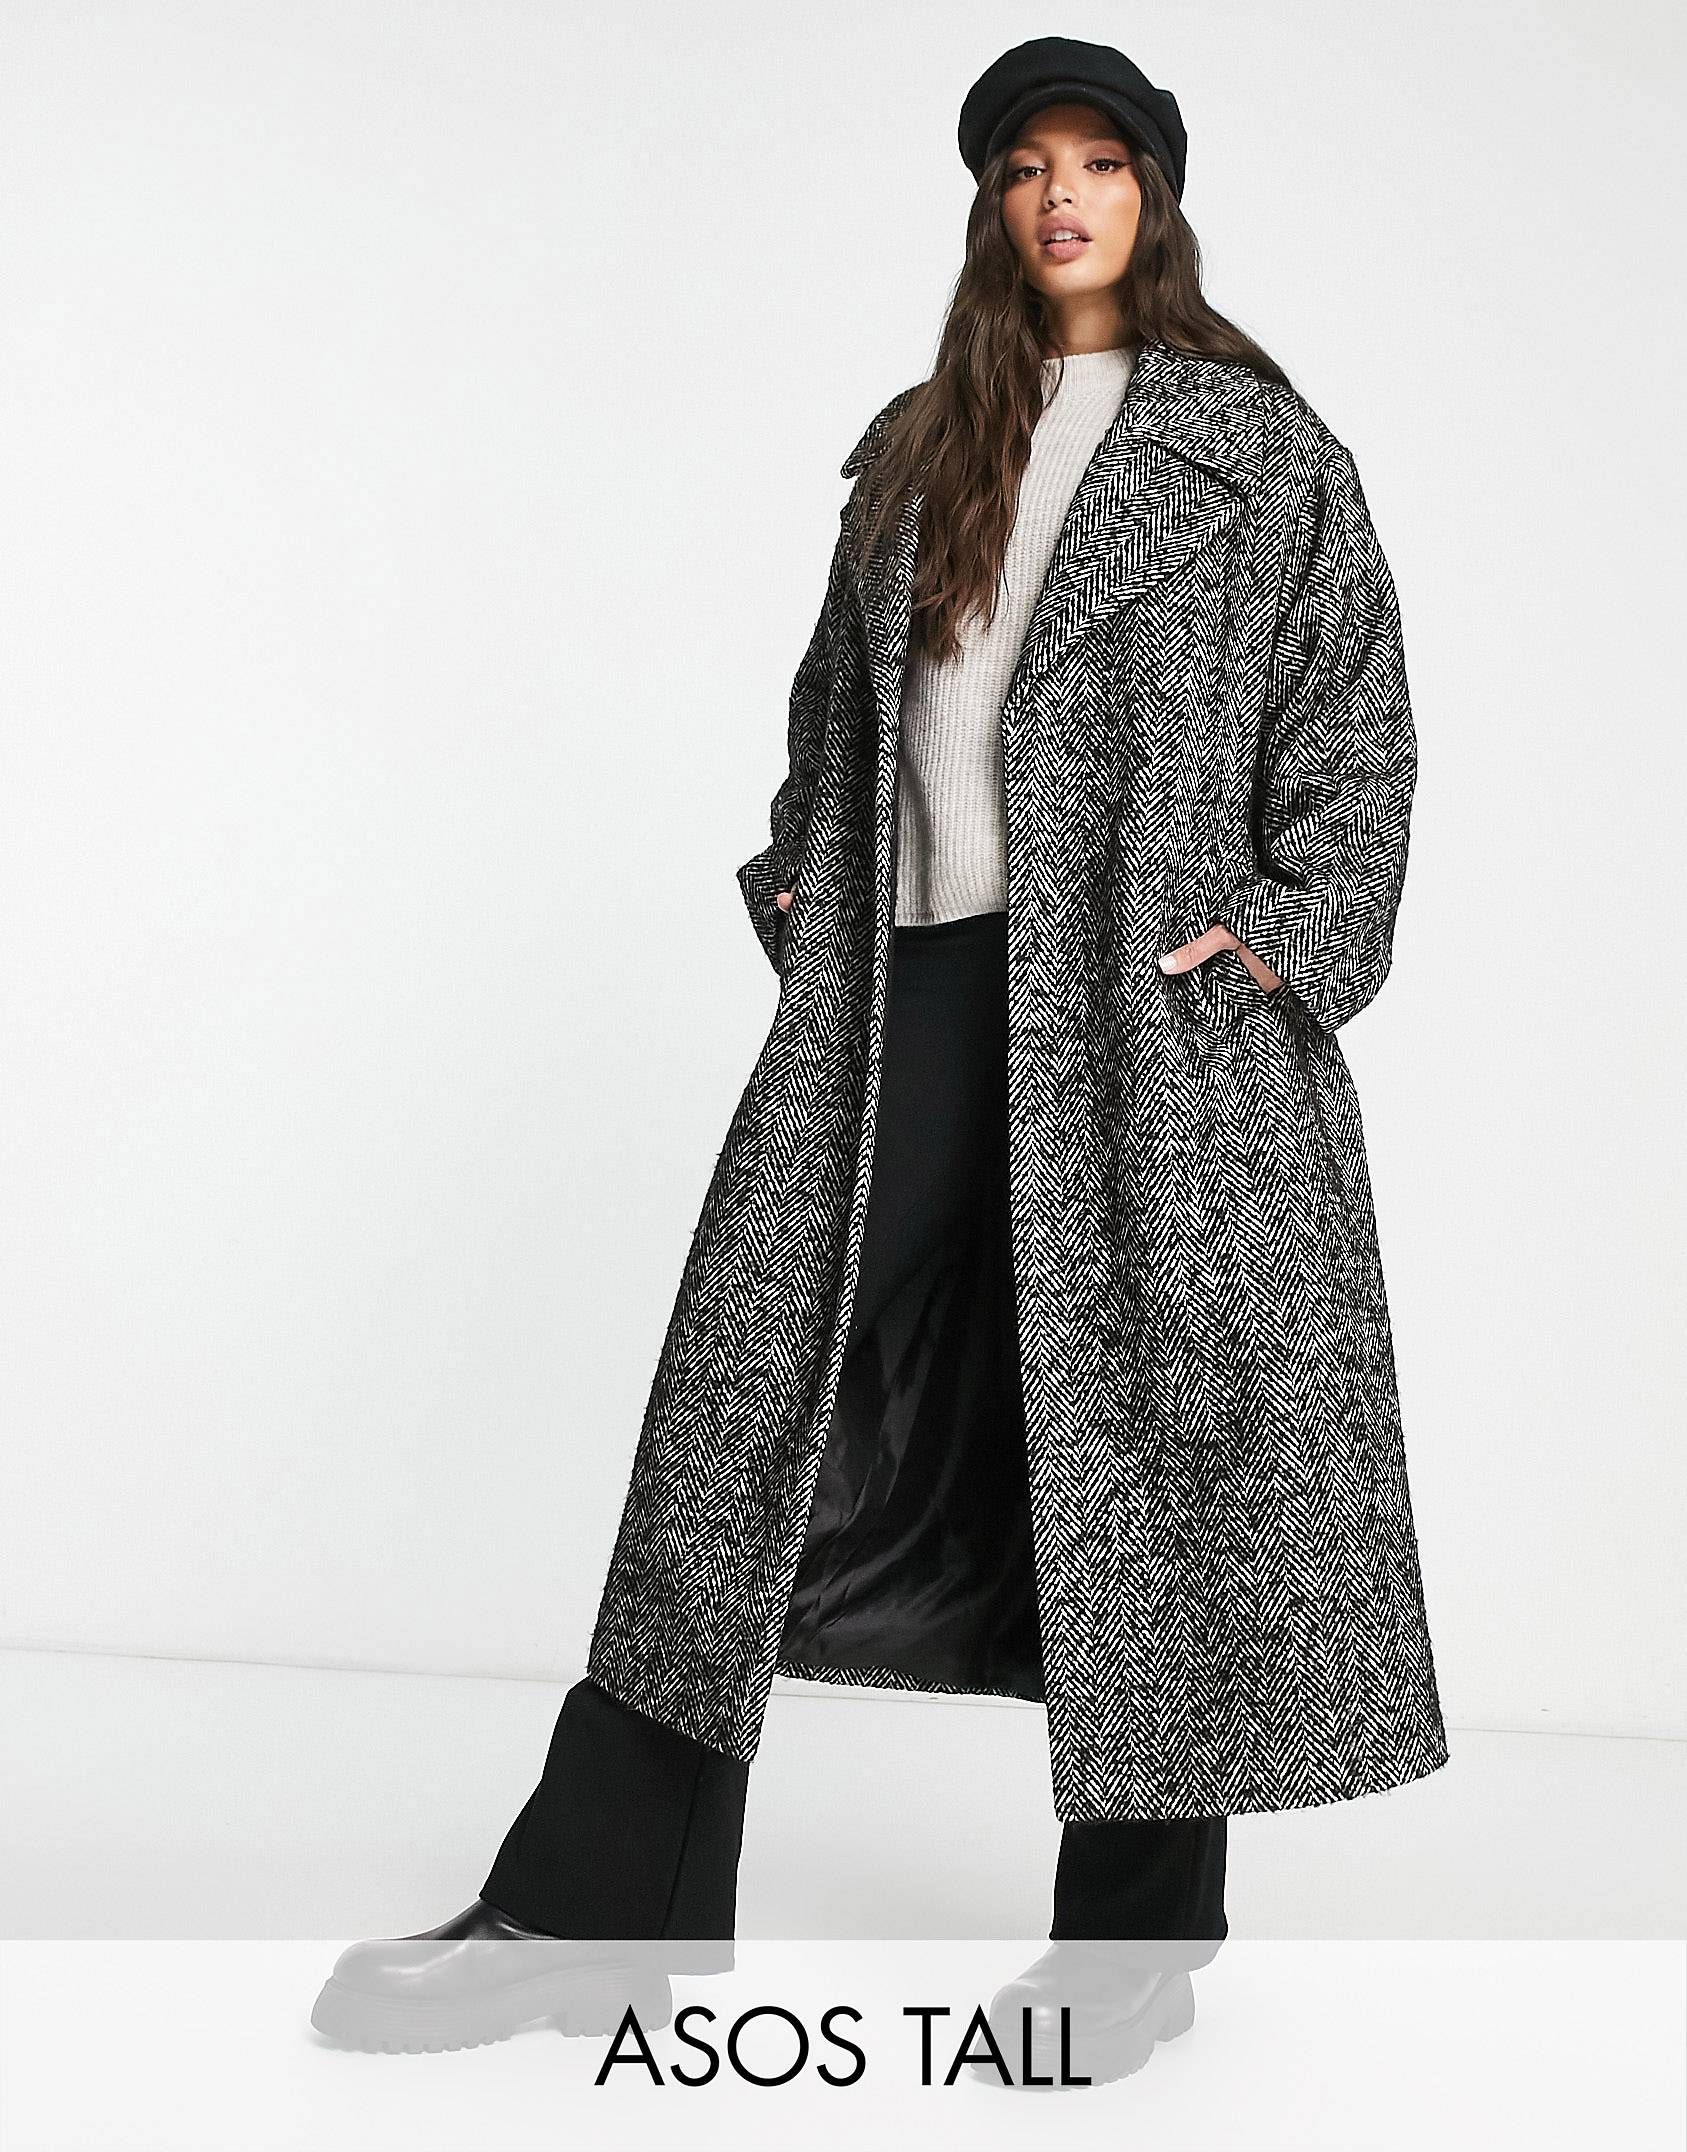 ASOS DESIGN Tall - Manteau habillé ceinturé à chevrons - Noir et blanc | ASOS (Global)